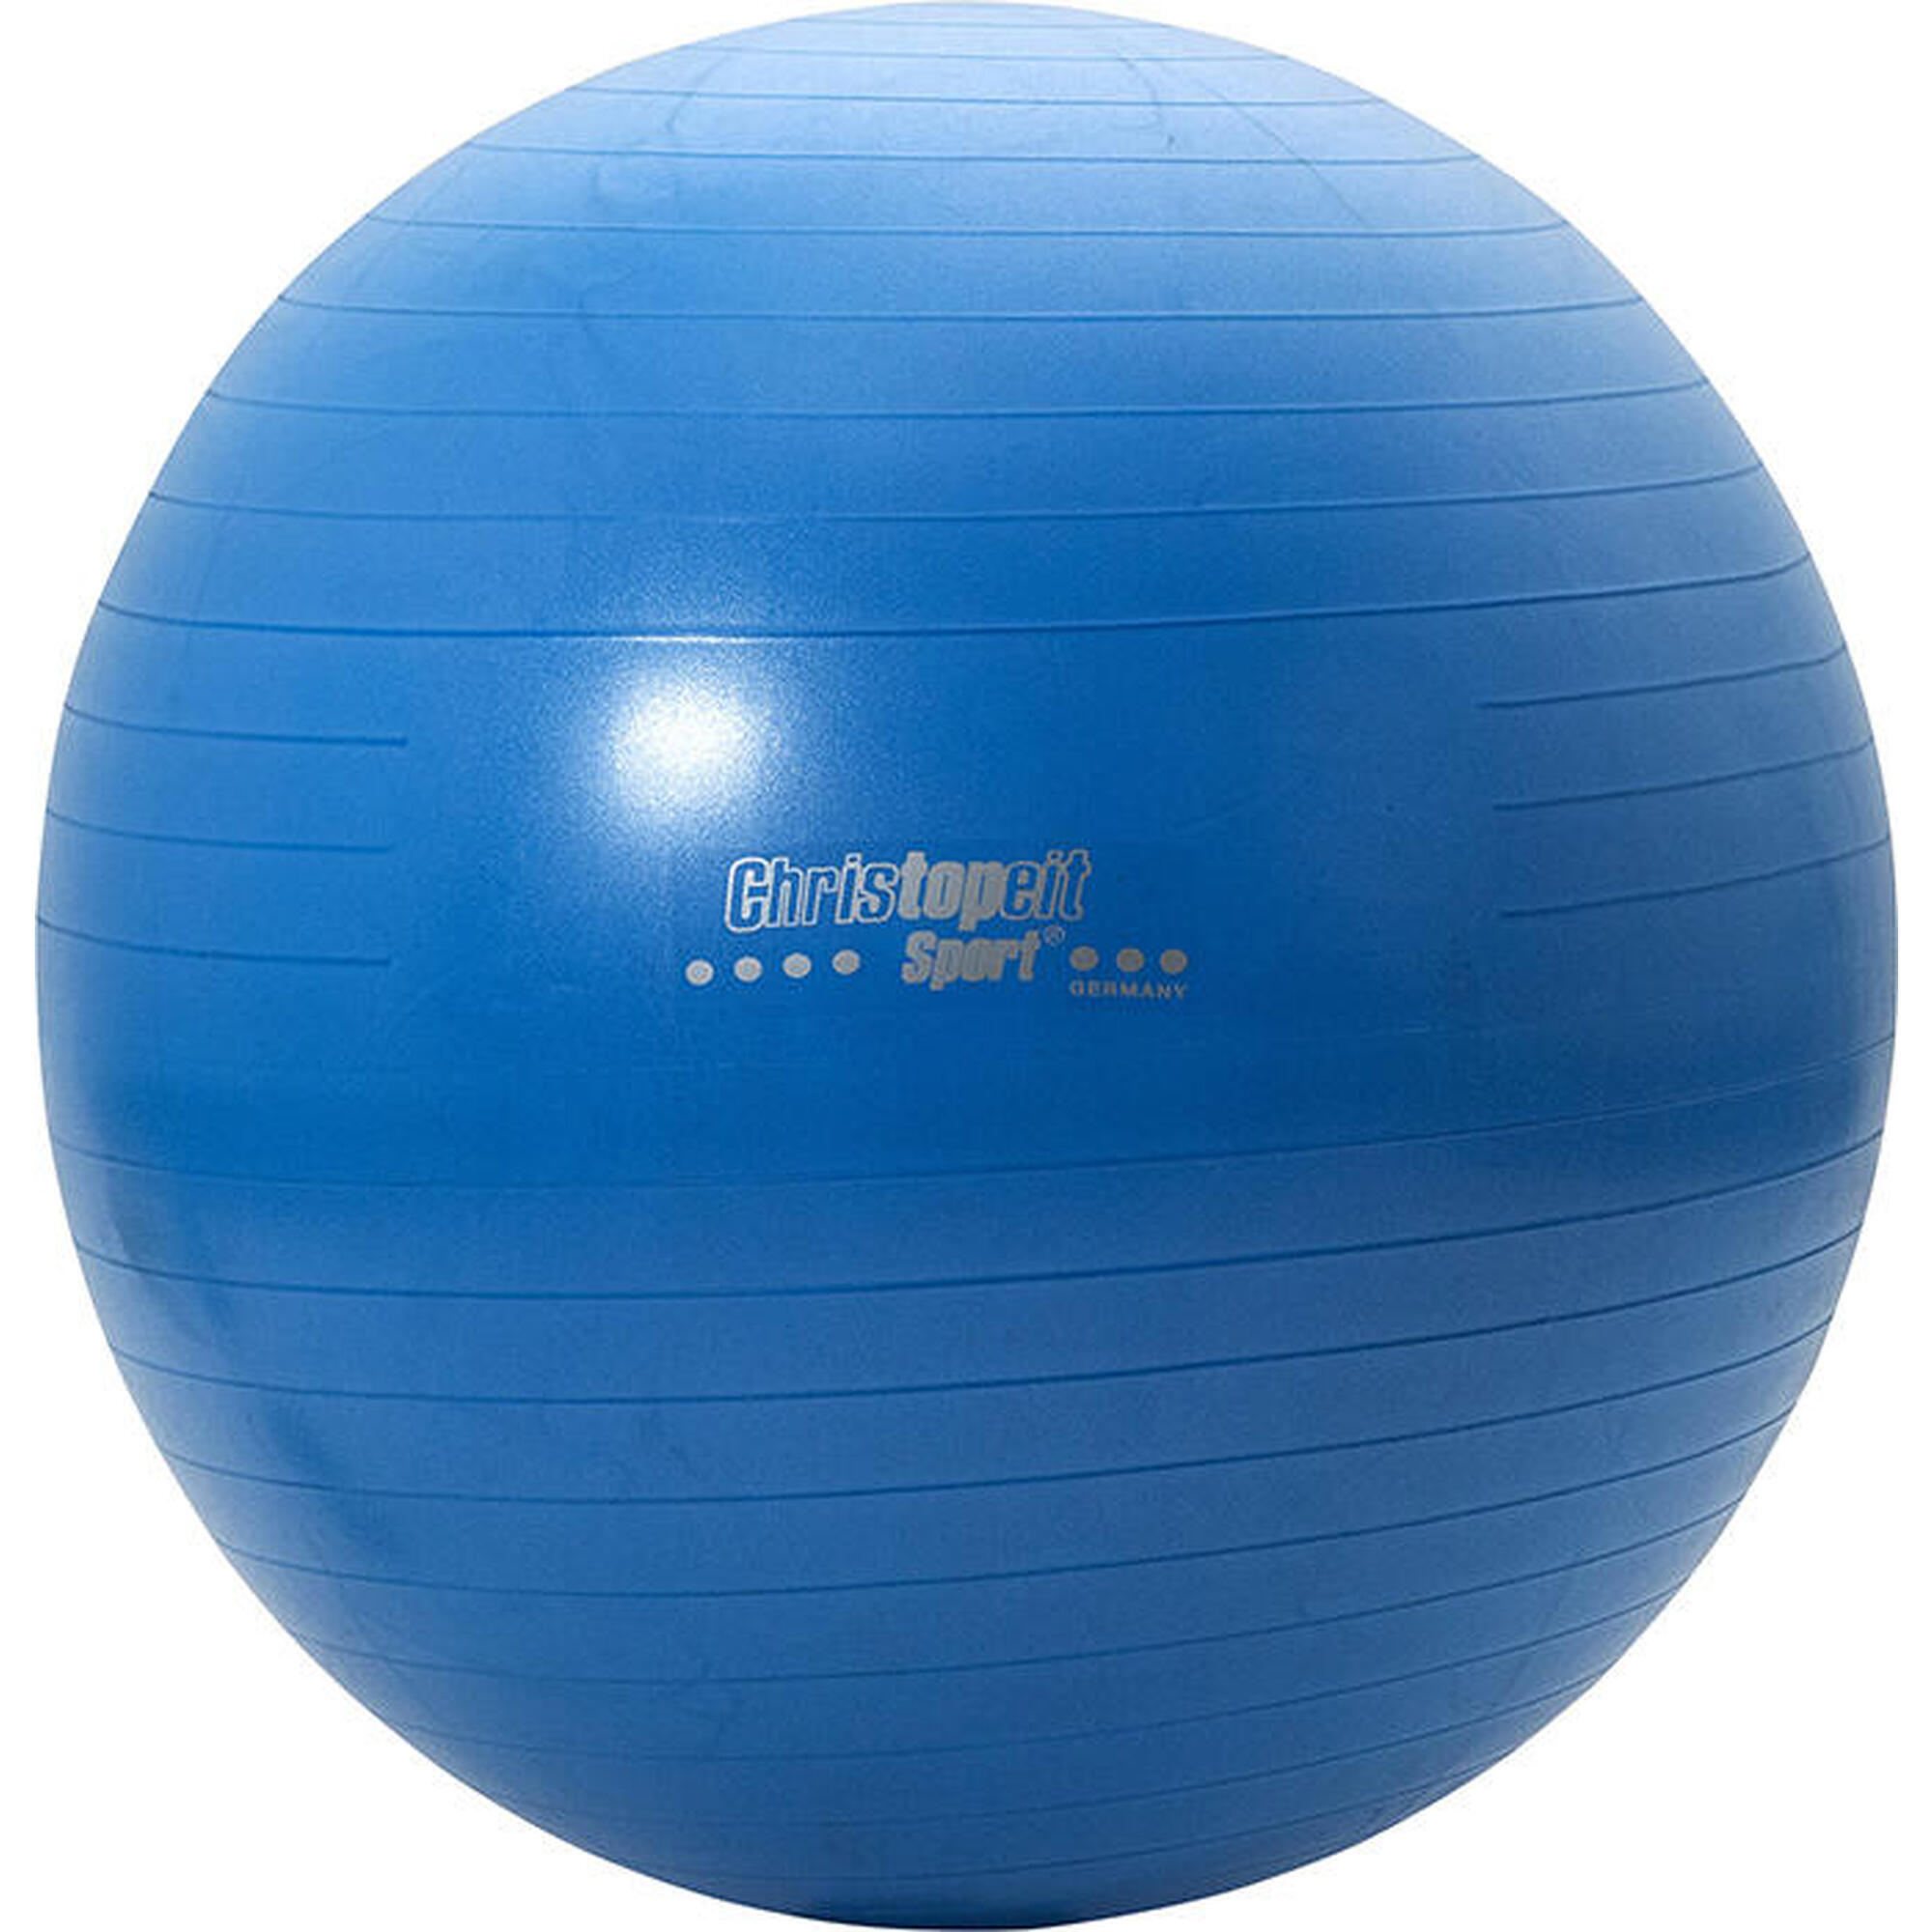 Christopeit Ballon de gymnastique 75cm avec pompe bleu